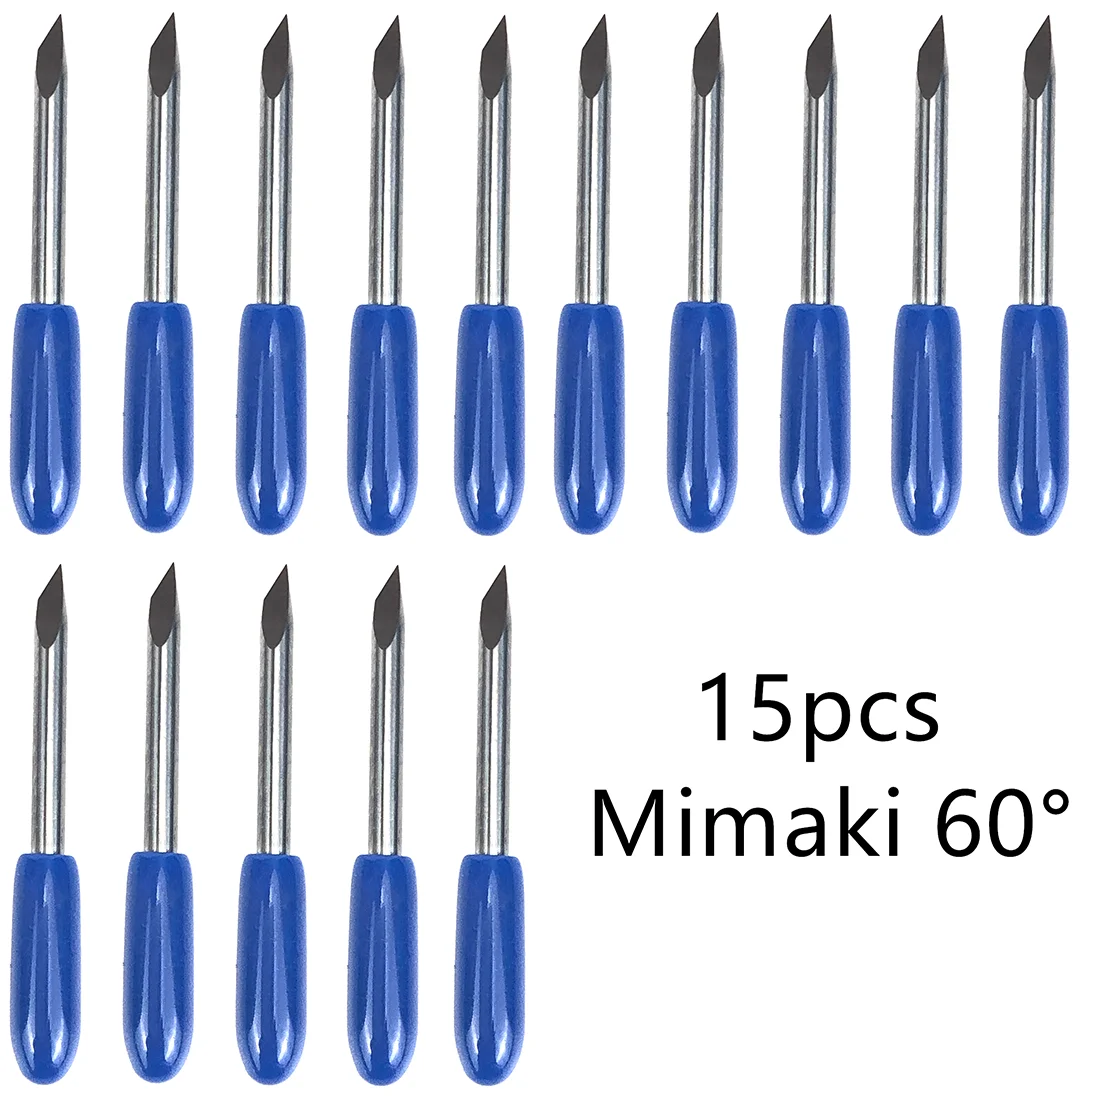 

60 градусов, 15 шт., Mimaki, плоттер, лезвие, виниловый резак, нож для Mimaki, режущий фрезерный резьбовой инструмент, высокое качество